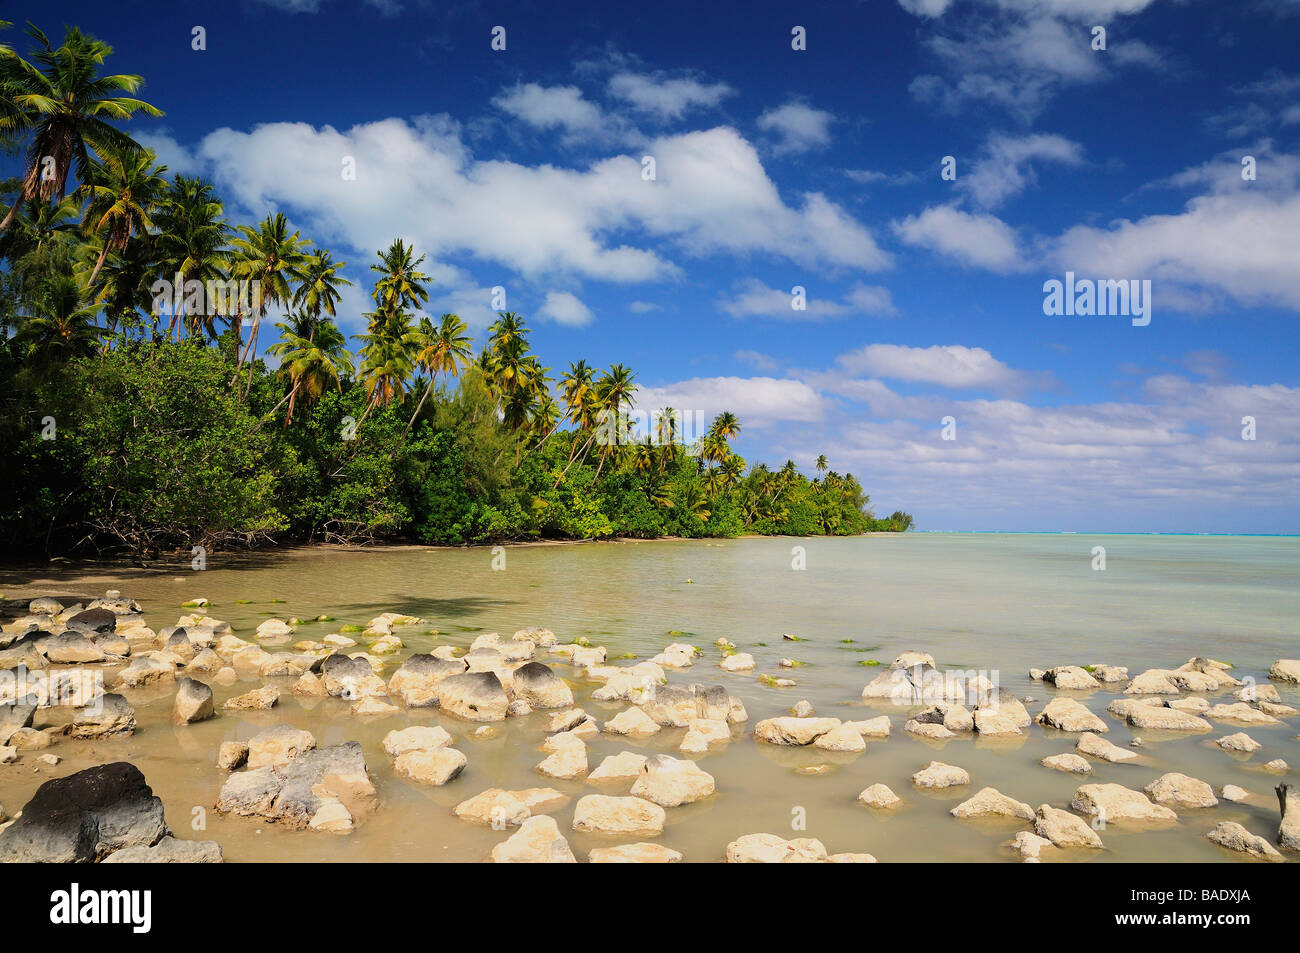 Rocks in Coastal Water, Aitutaki, Cook Islands Stock Photo